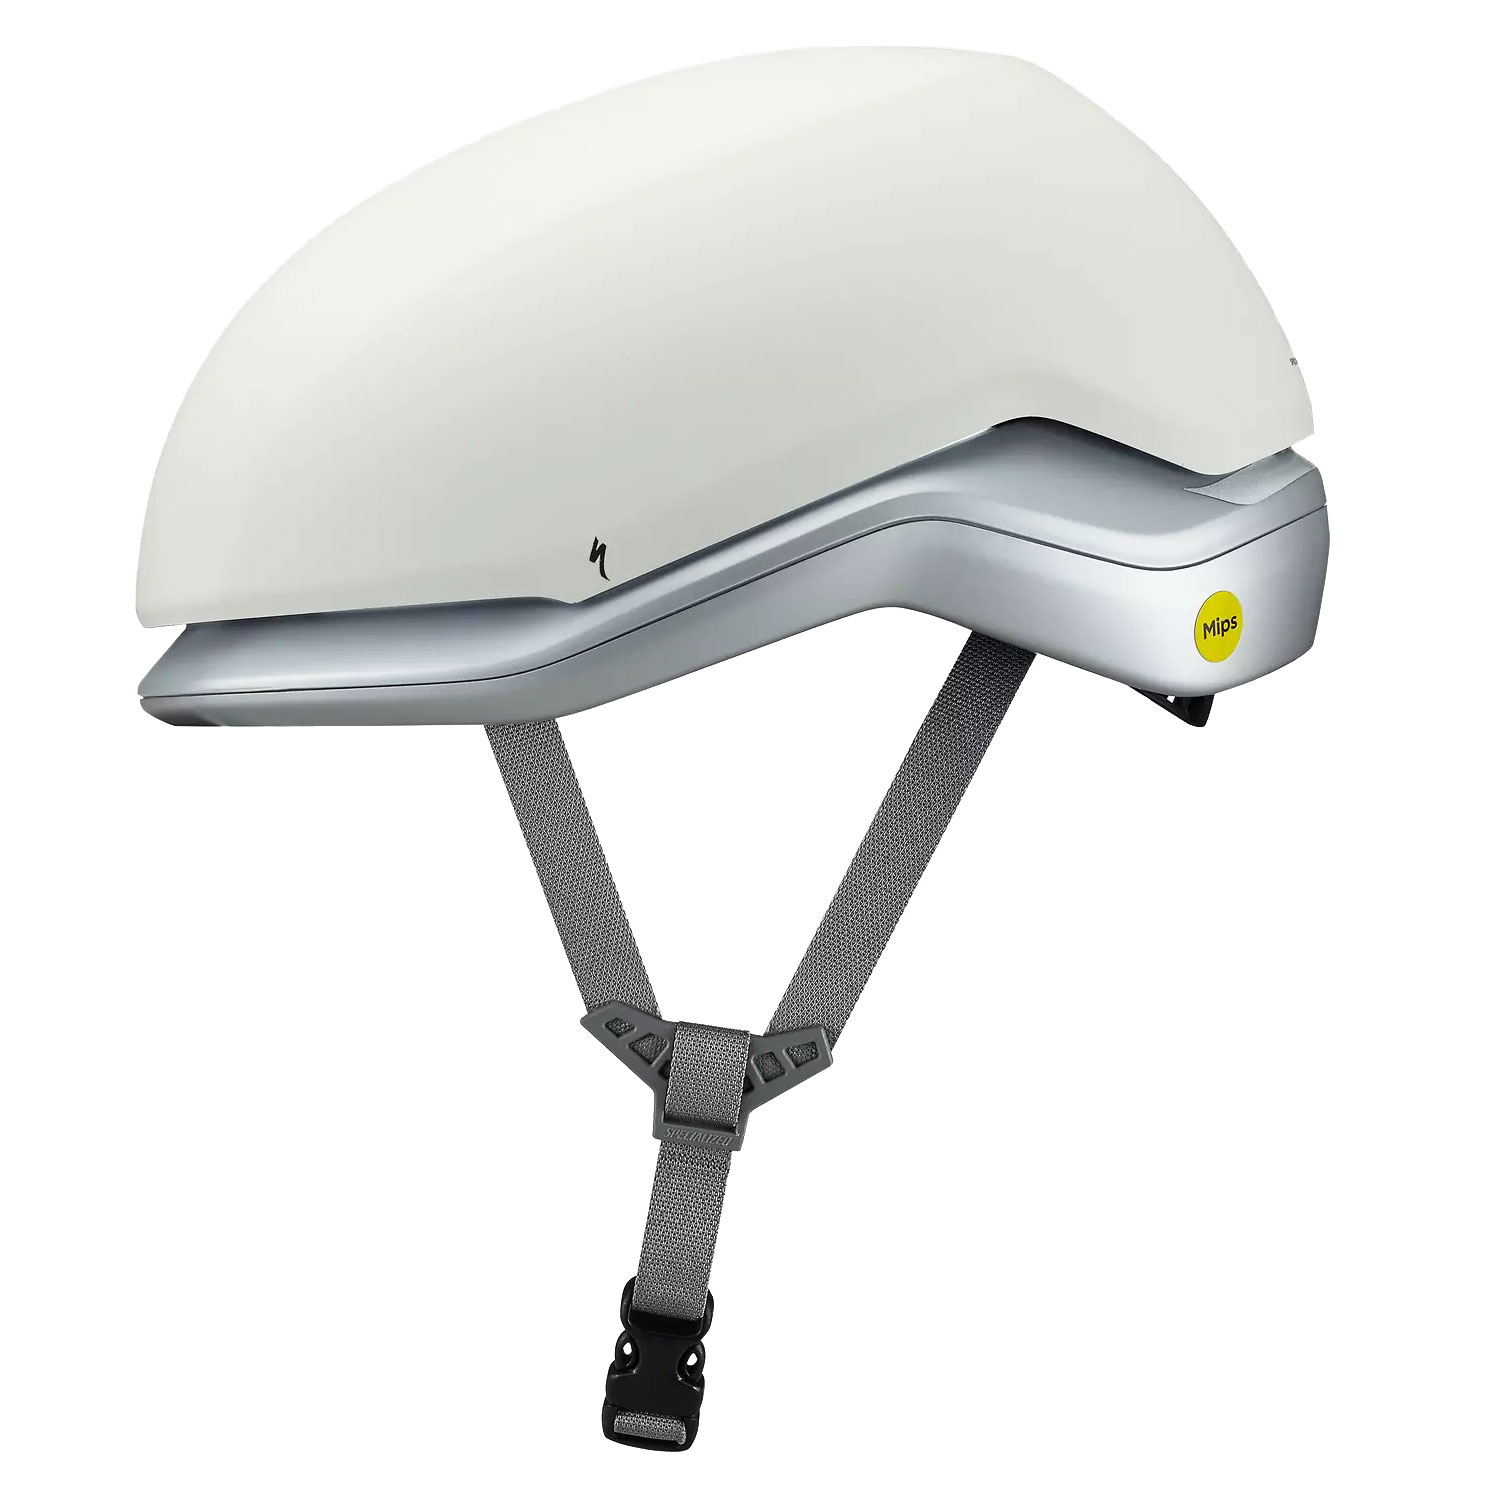 Produktbild von Specialized Mode Helm - Dune White